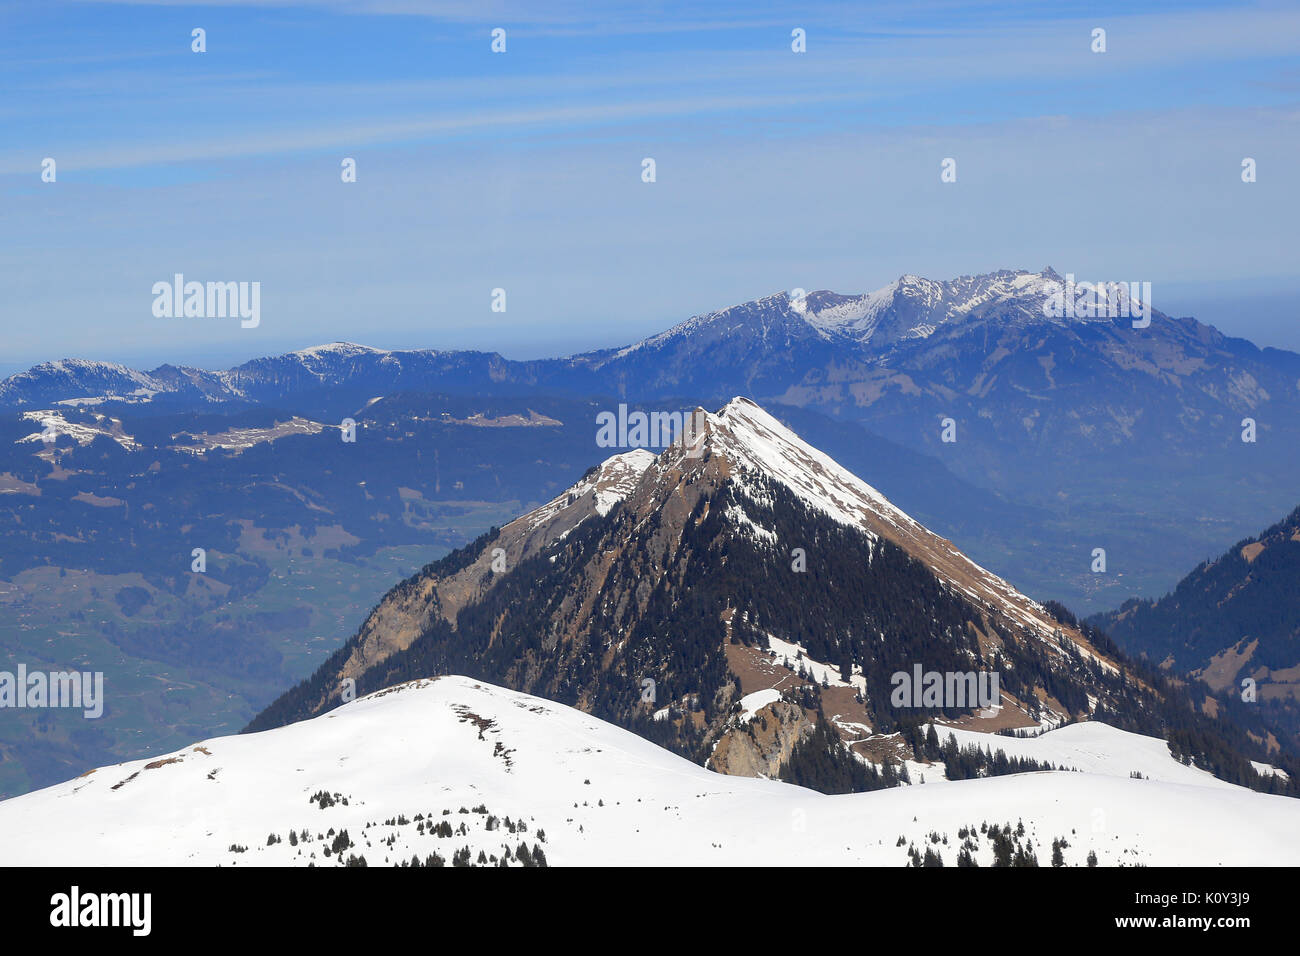 Stanserhorn und Pilatus Berg der Schweiz Schweizer Alpen berge Luftbild Fotografie Foto Stockfoto